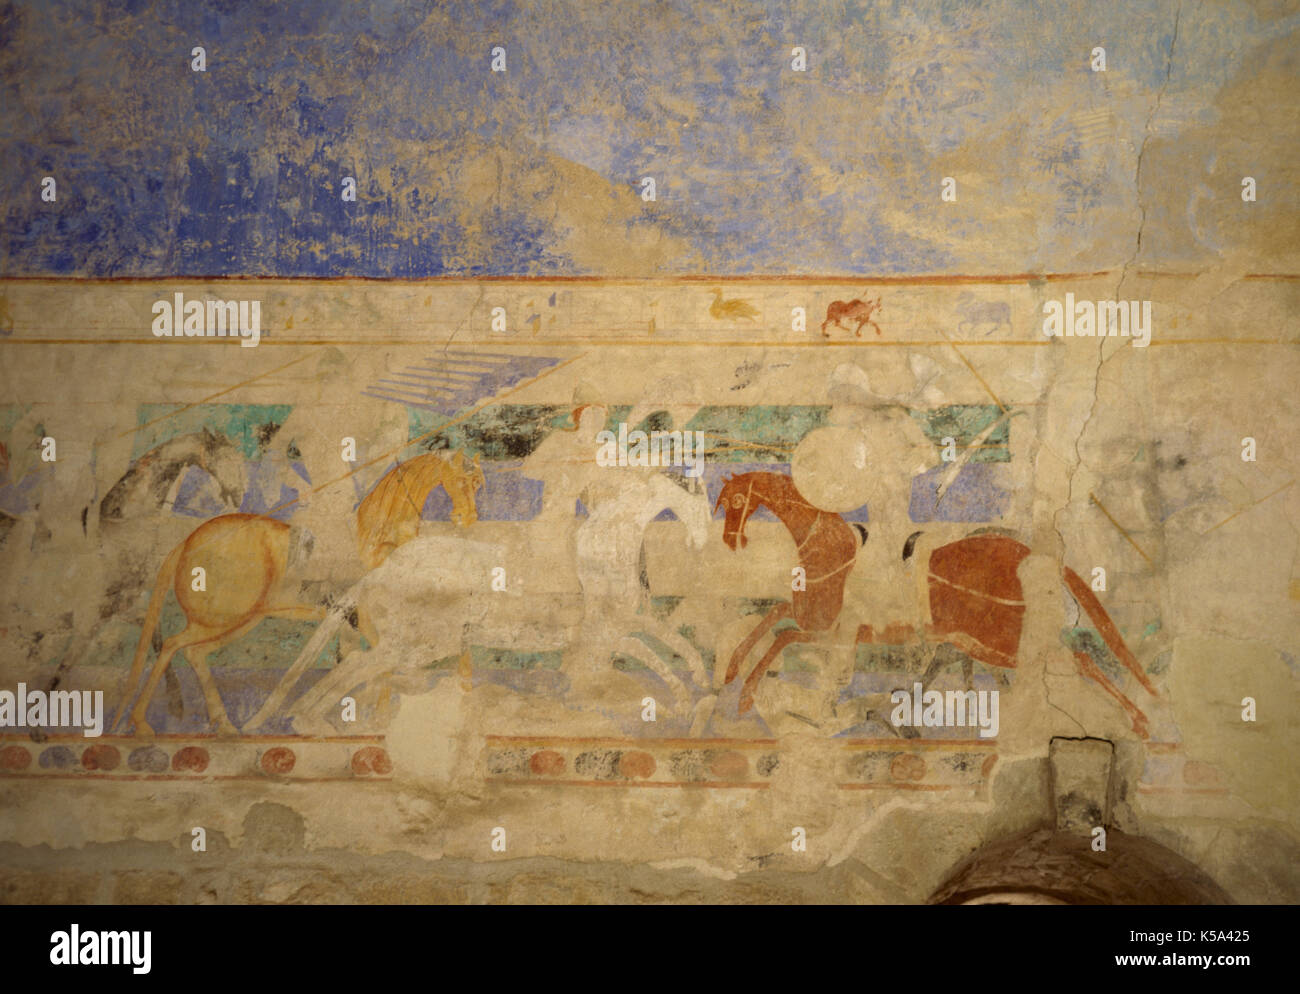 Torneo Medievale. Pittura murale. Lotta a cavallo tra due cavalieri, uno di loro Cattolica e gli altri Cathar. Chateau Comtal Museum, Carcassonne, Francia. Foto Stock